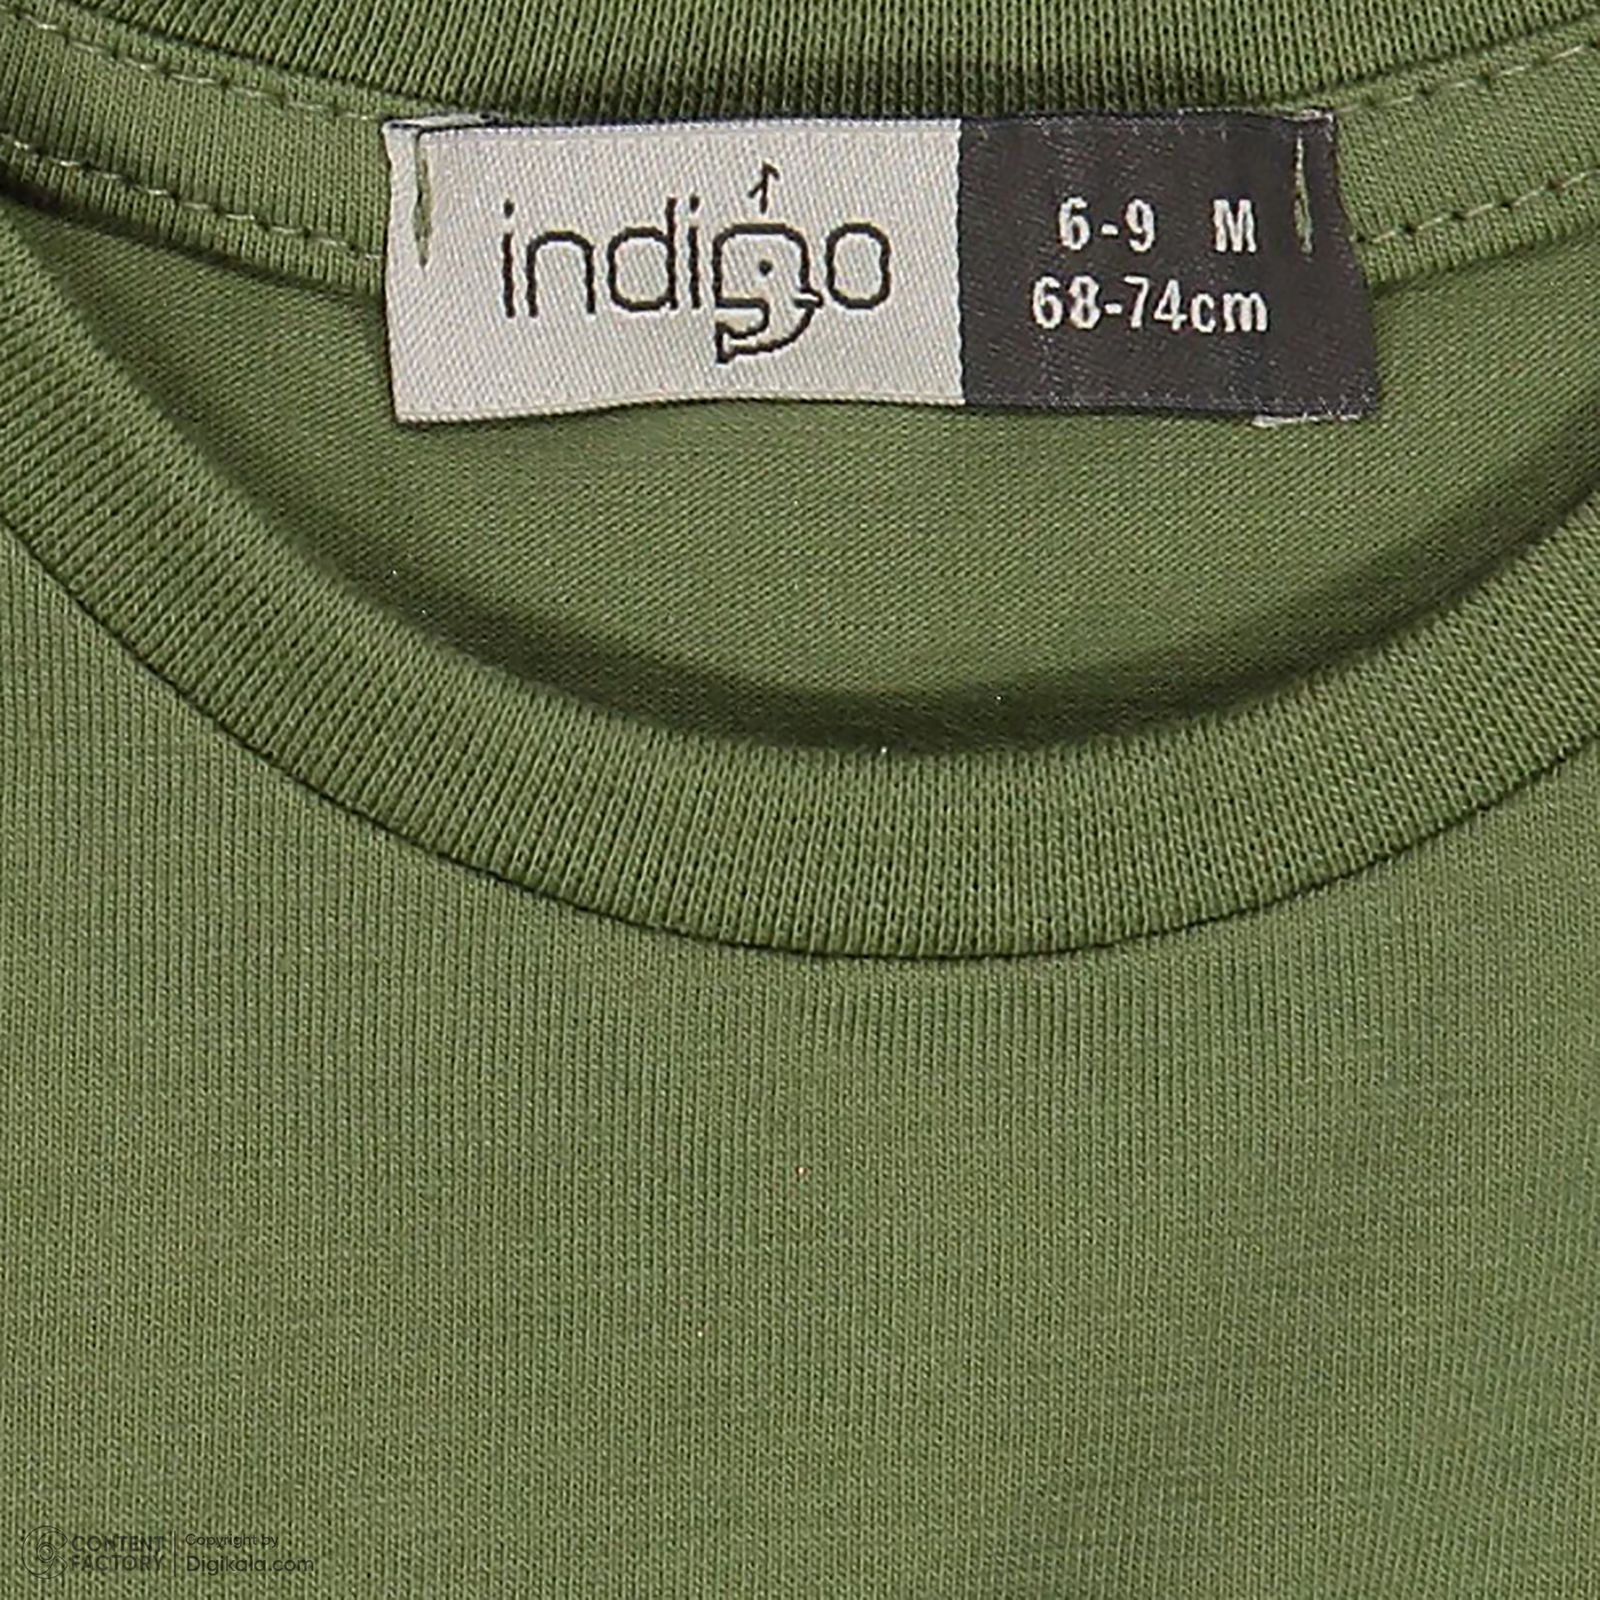 ست تی شرت و شلوارک نوزادی پسرانه ایندیگو مدل 13213 رنگ سبز -  - 9